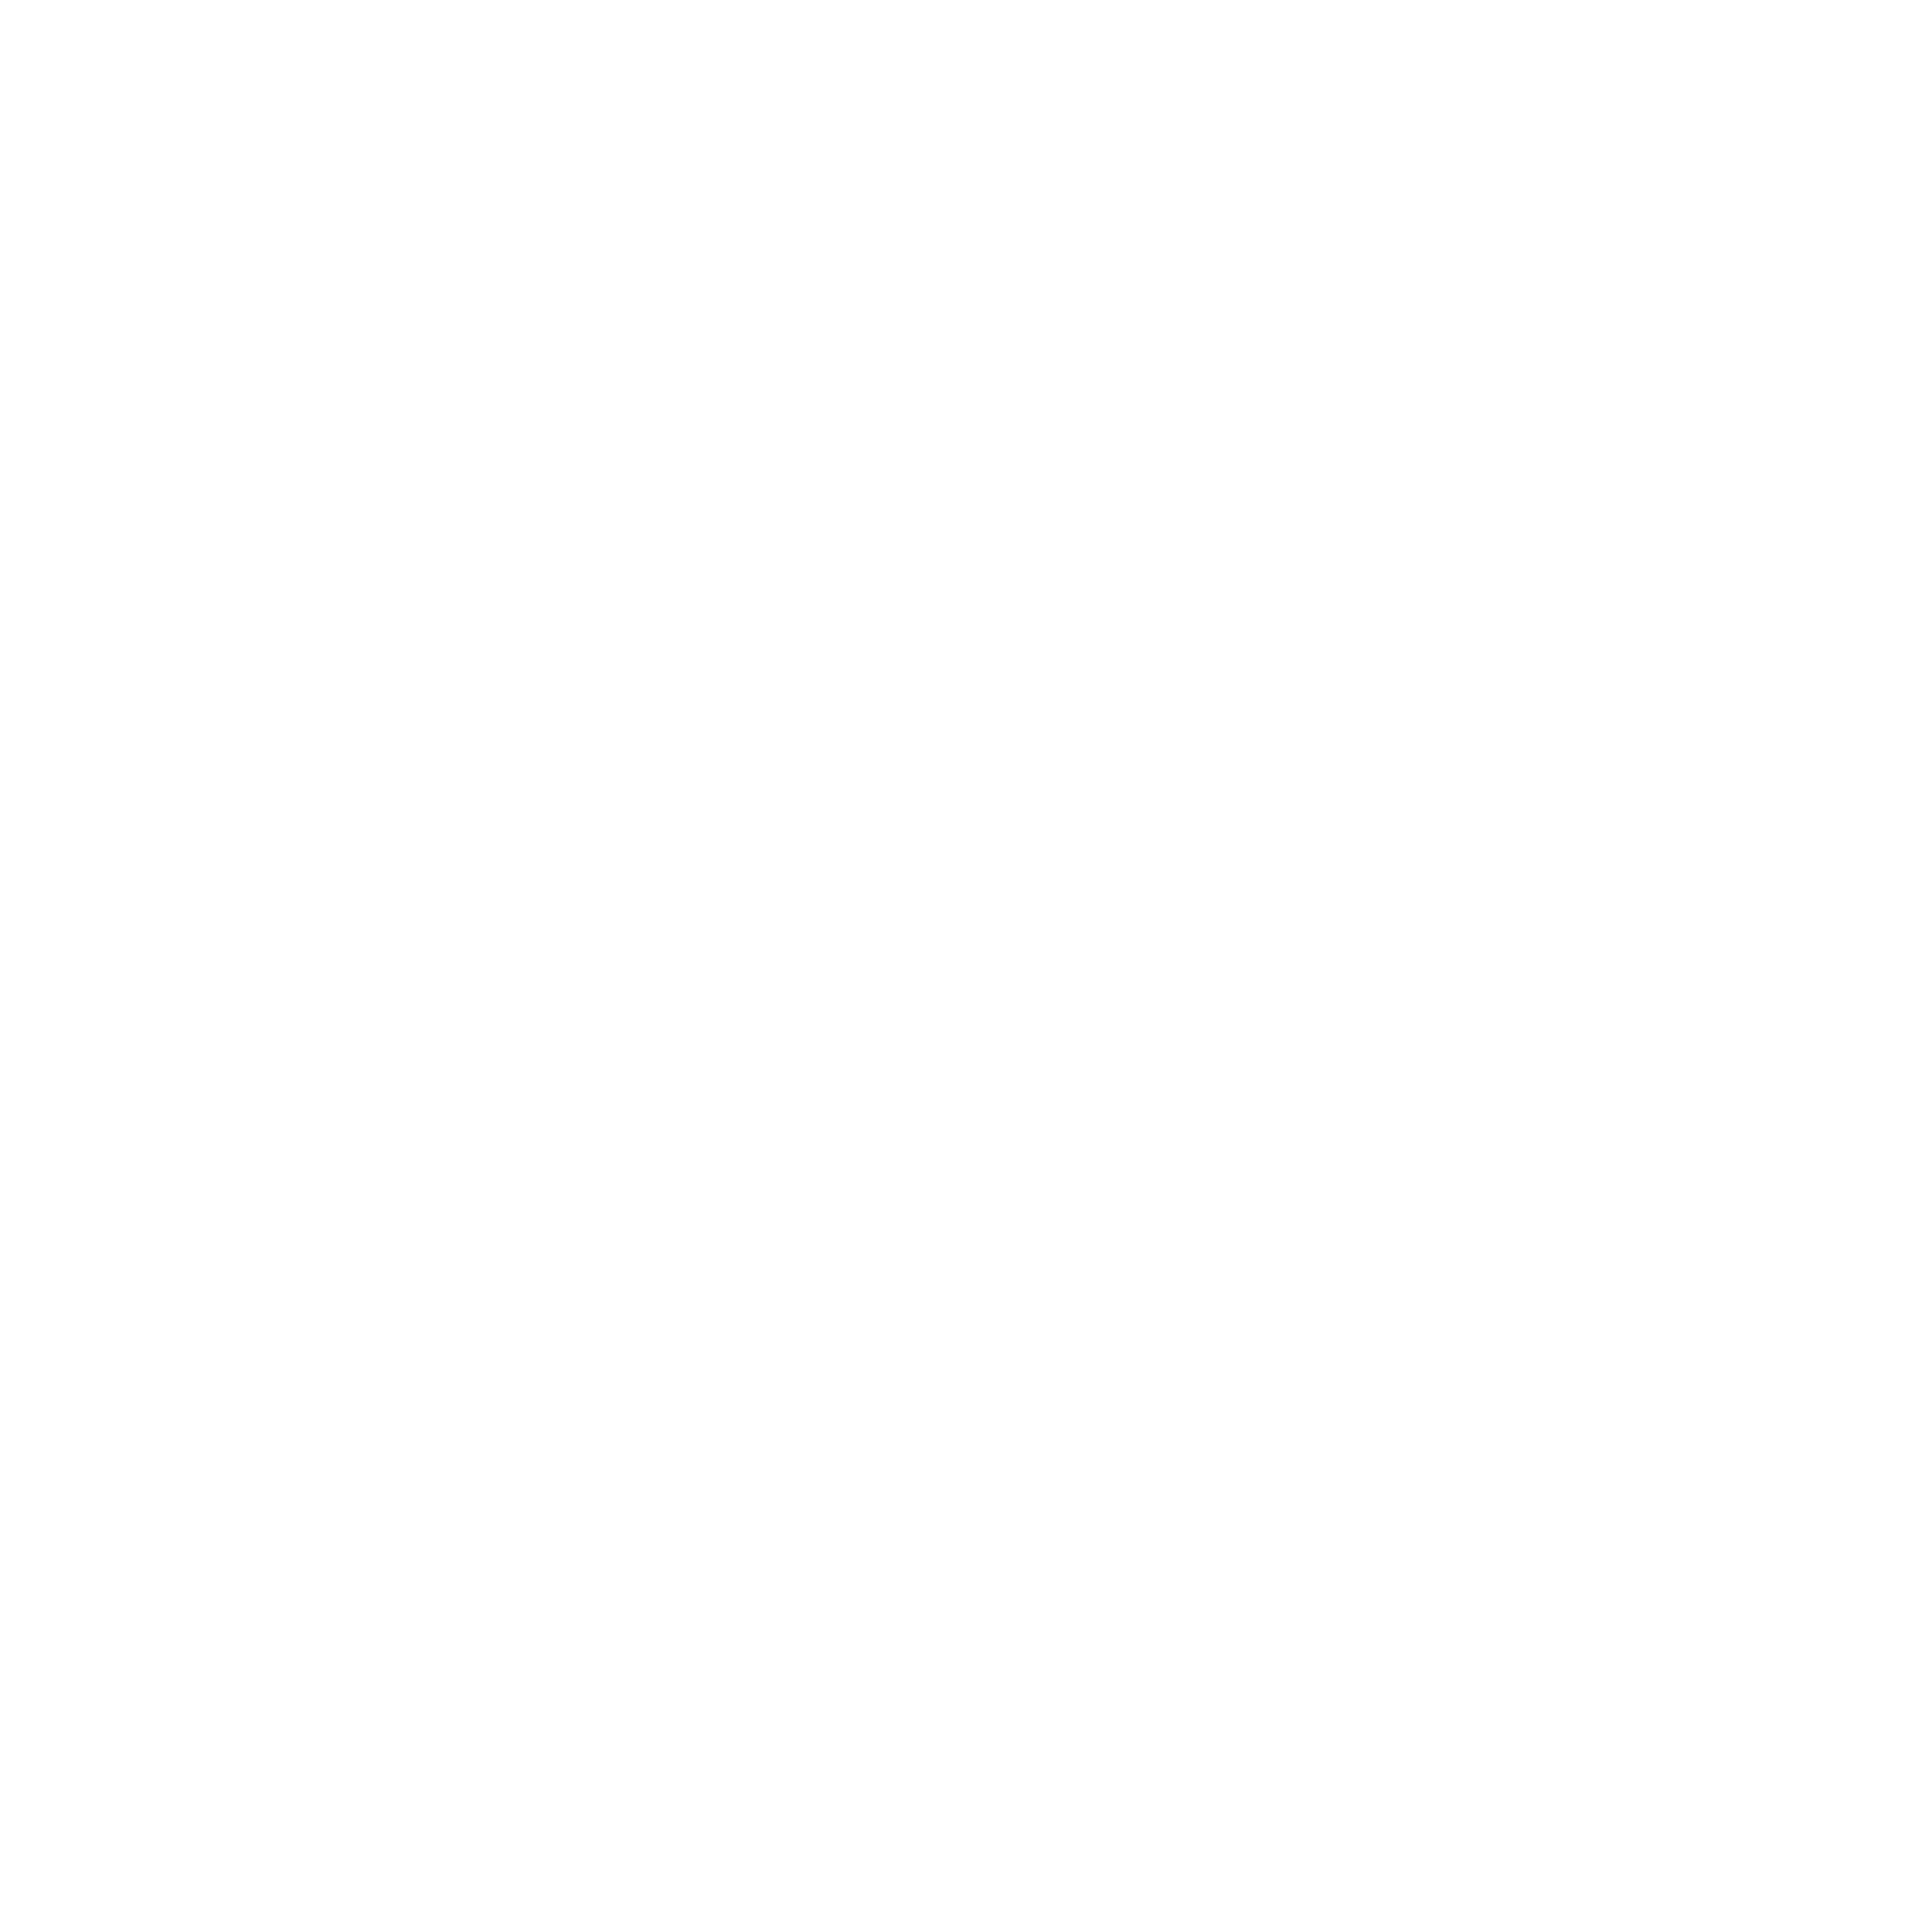 Marriott Logo White